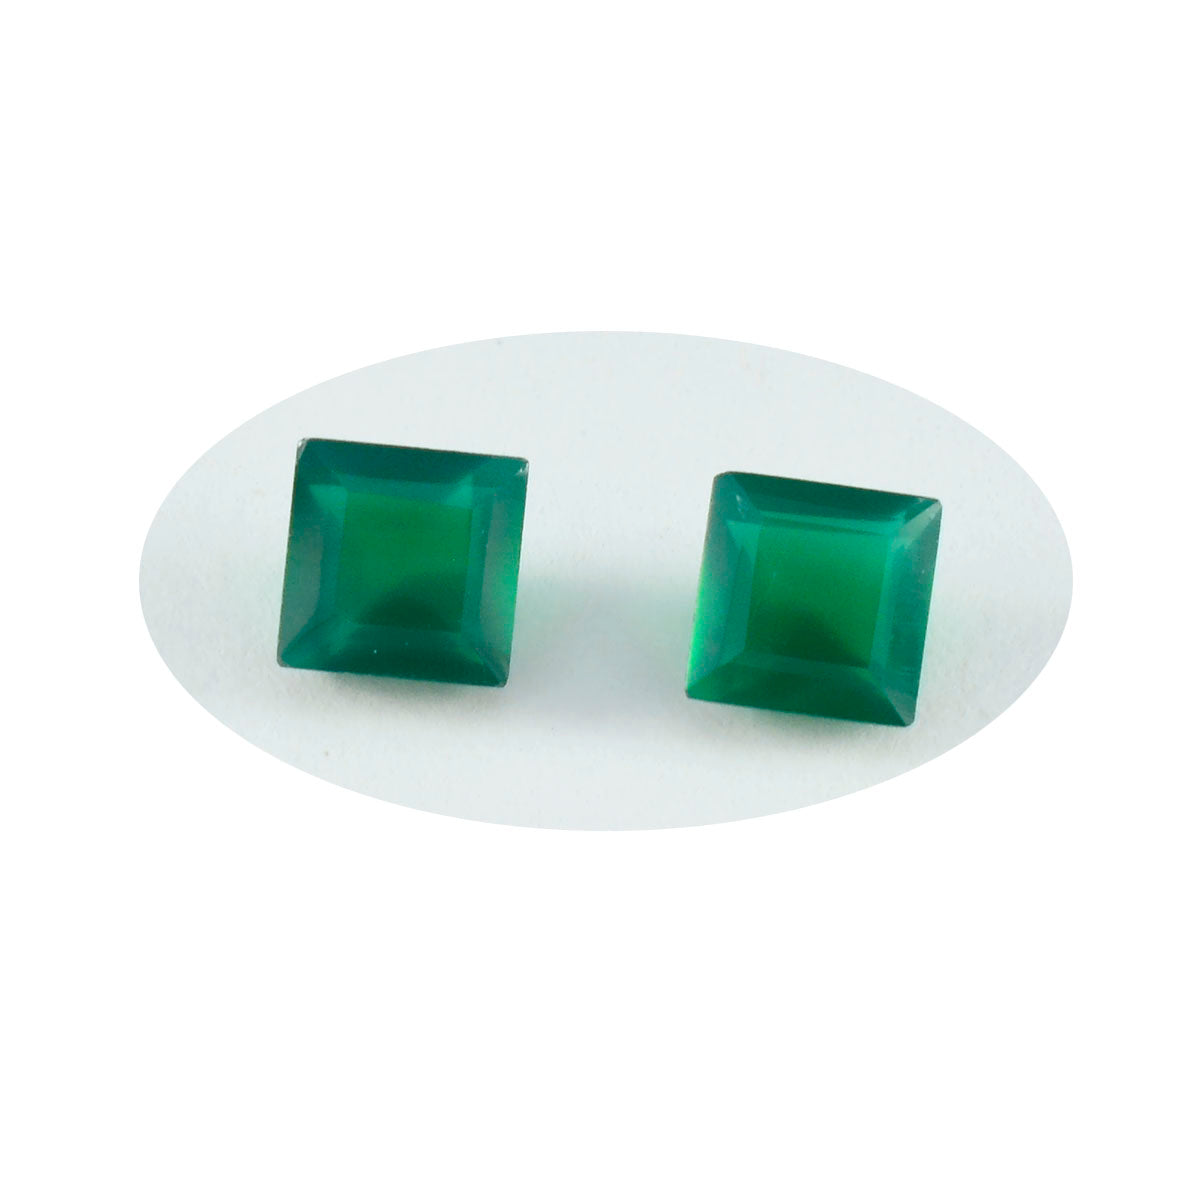 Riyogems, 1 unidad, ónix verde Natural facetado, 10x10mm, forma cuadrada, gema suelta de calidad encantadora